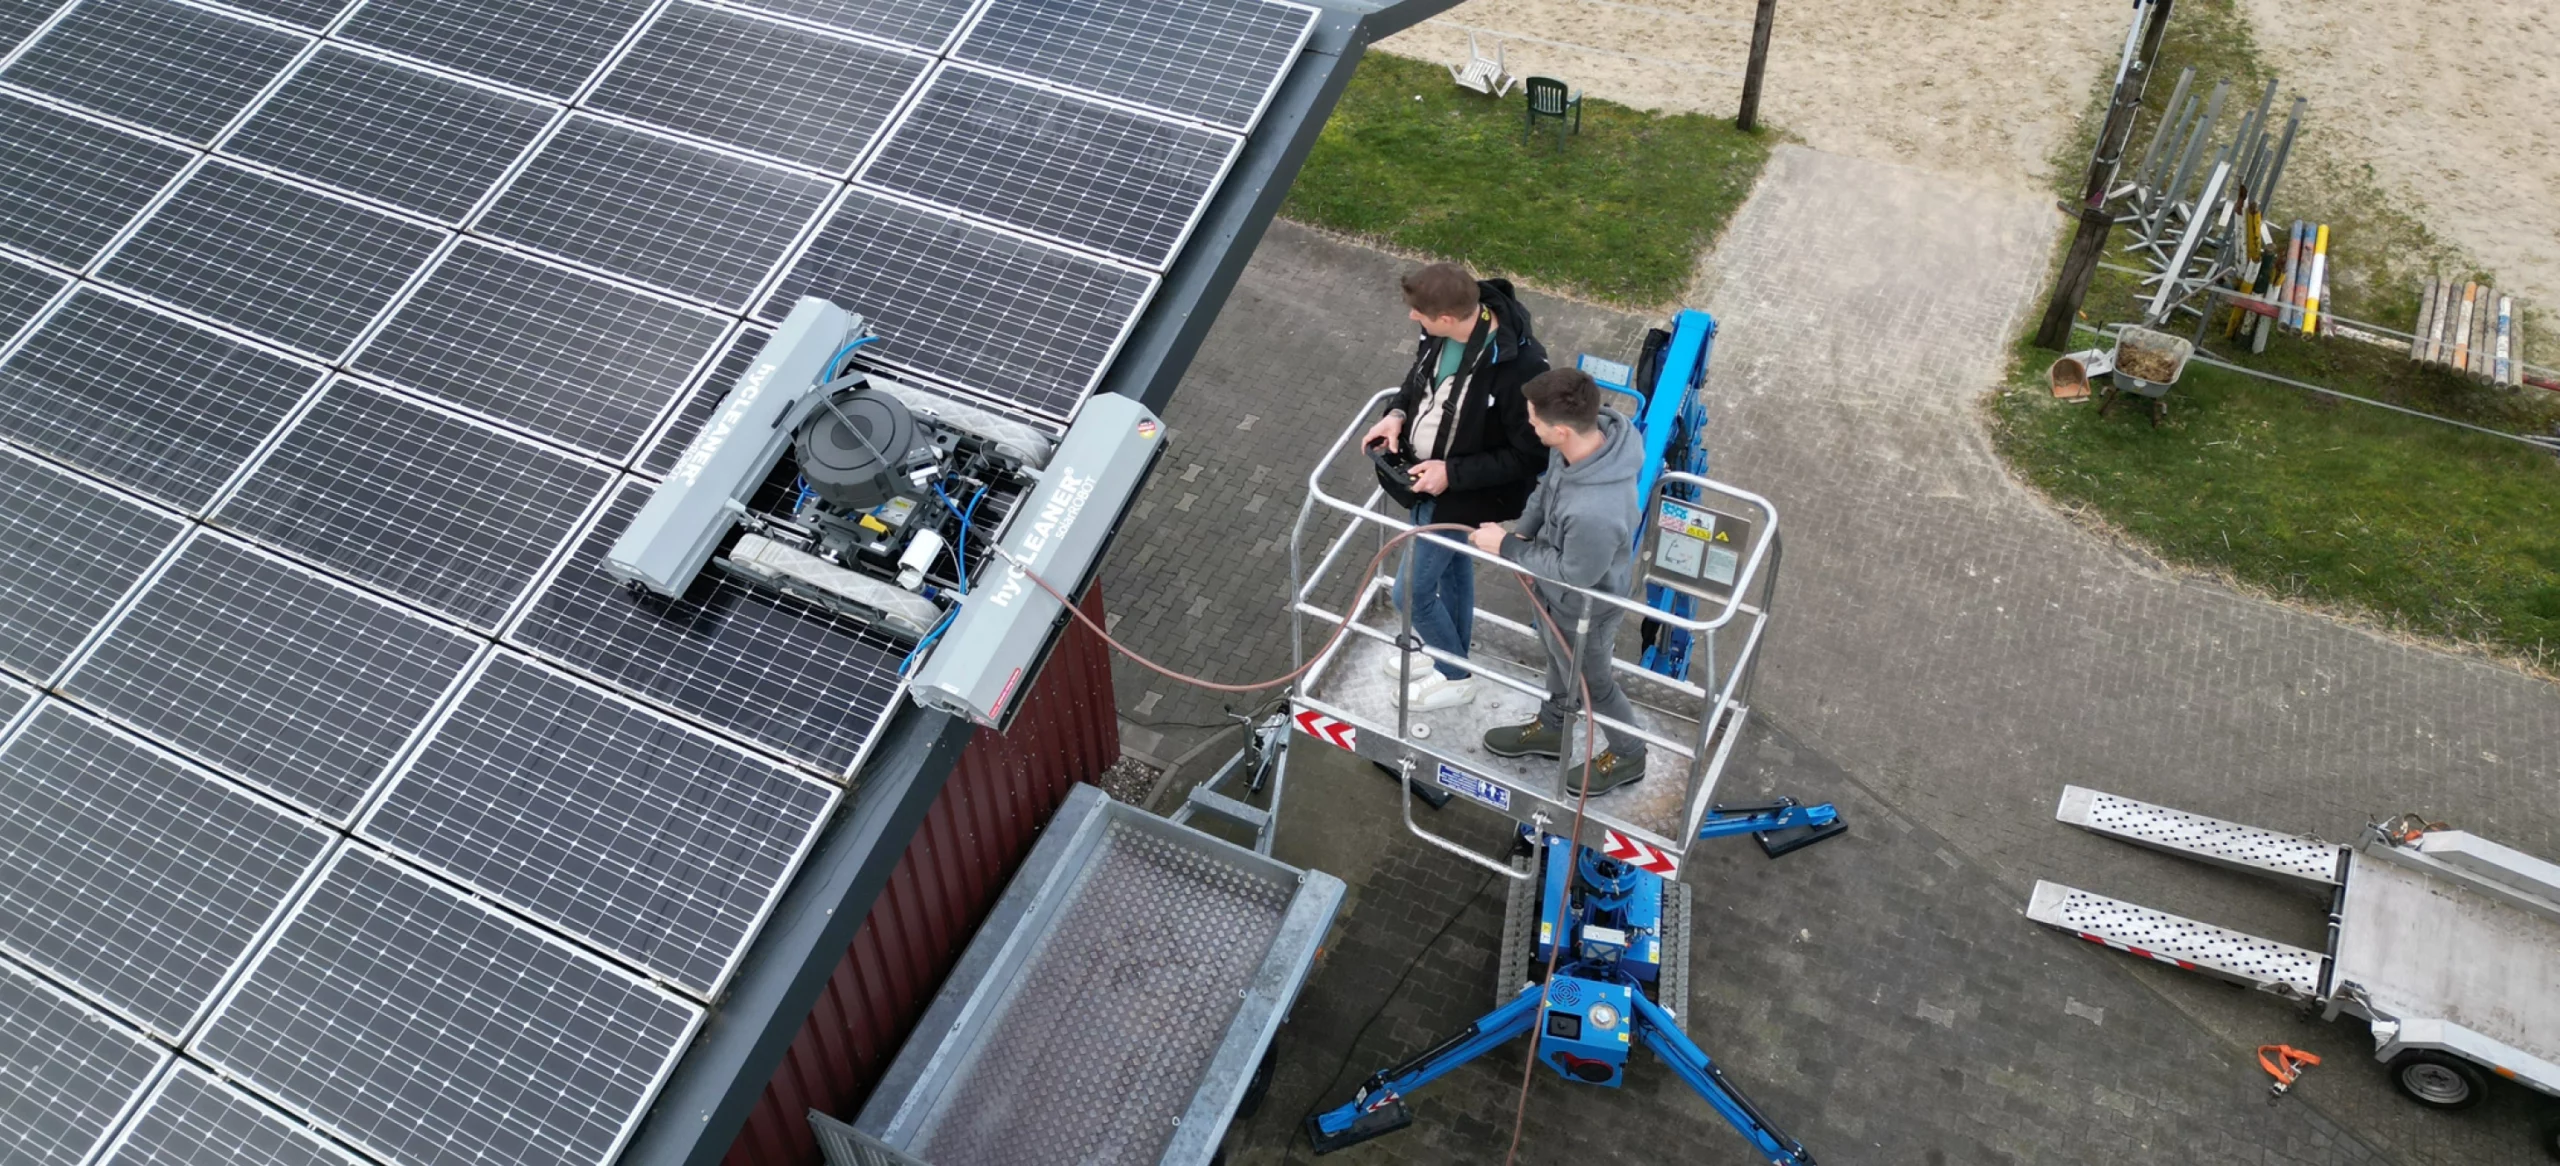 Zonnepanelen reinigen van bovenaf met de PV-reinigingsrobot solarROBOT